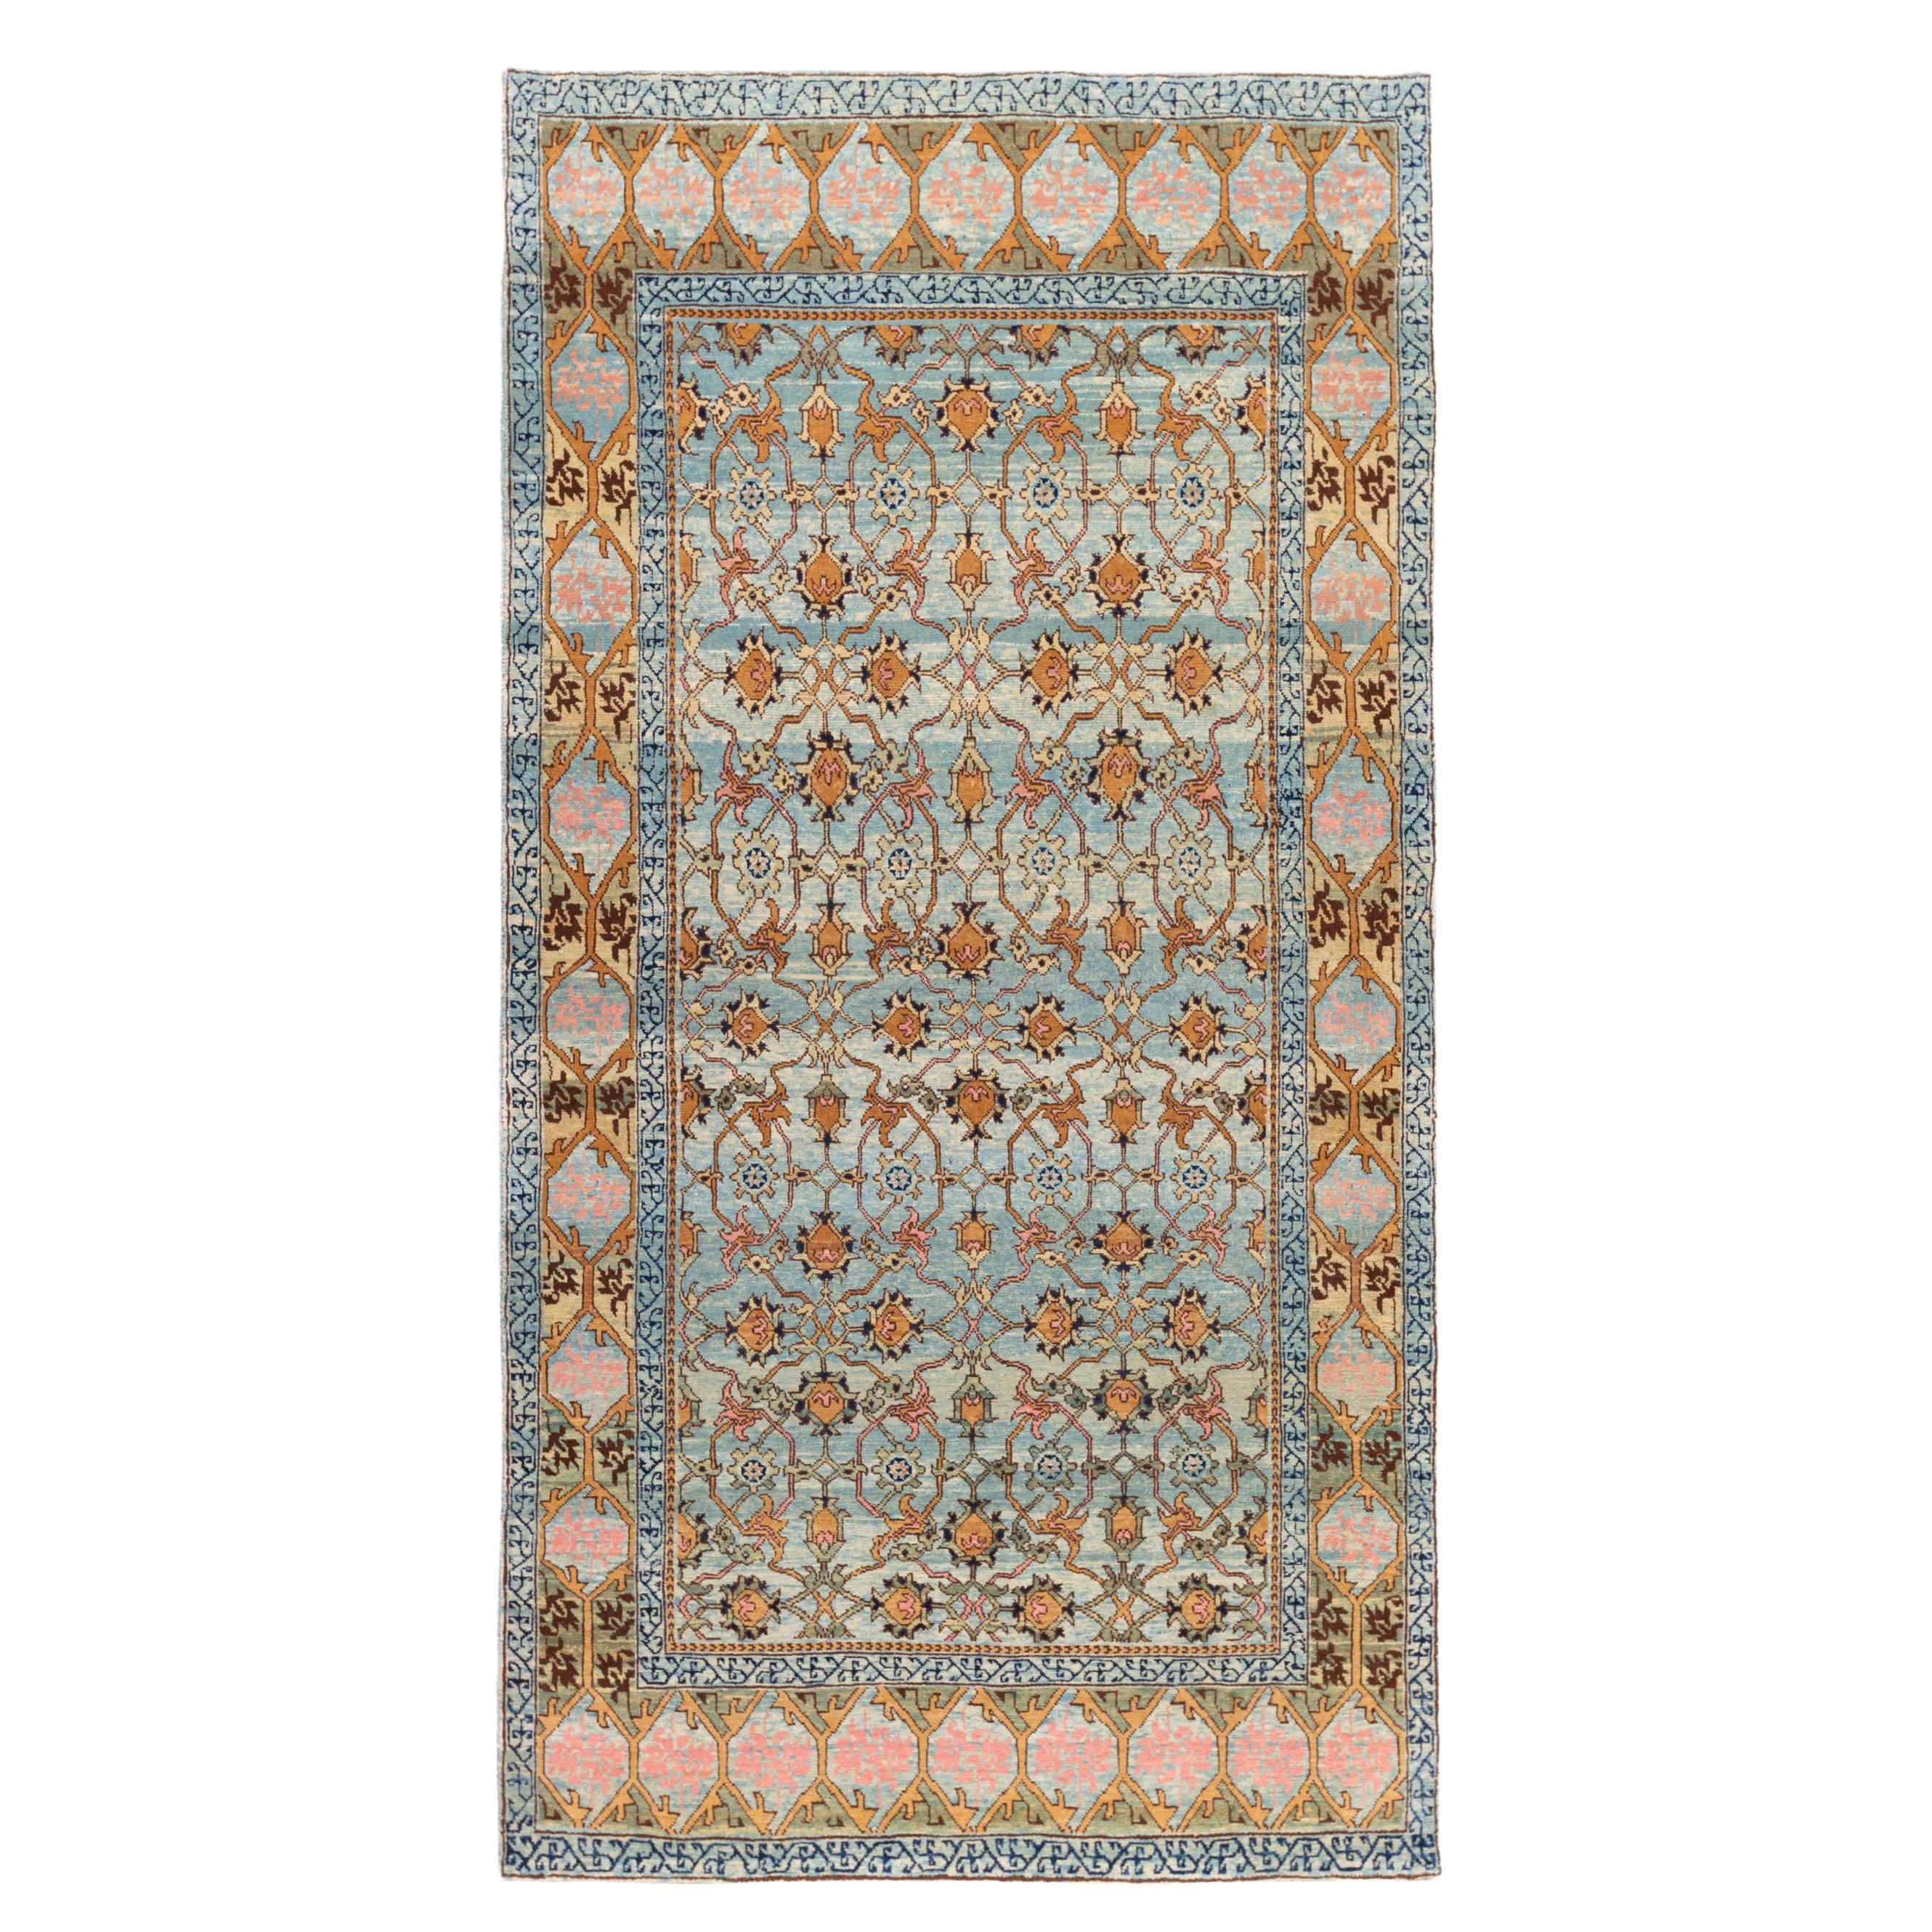 Ararat Rugs Mamluk Carpet with Lattice Design, Antique Revival Rug Natural Dyed